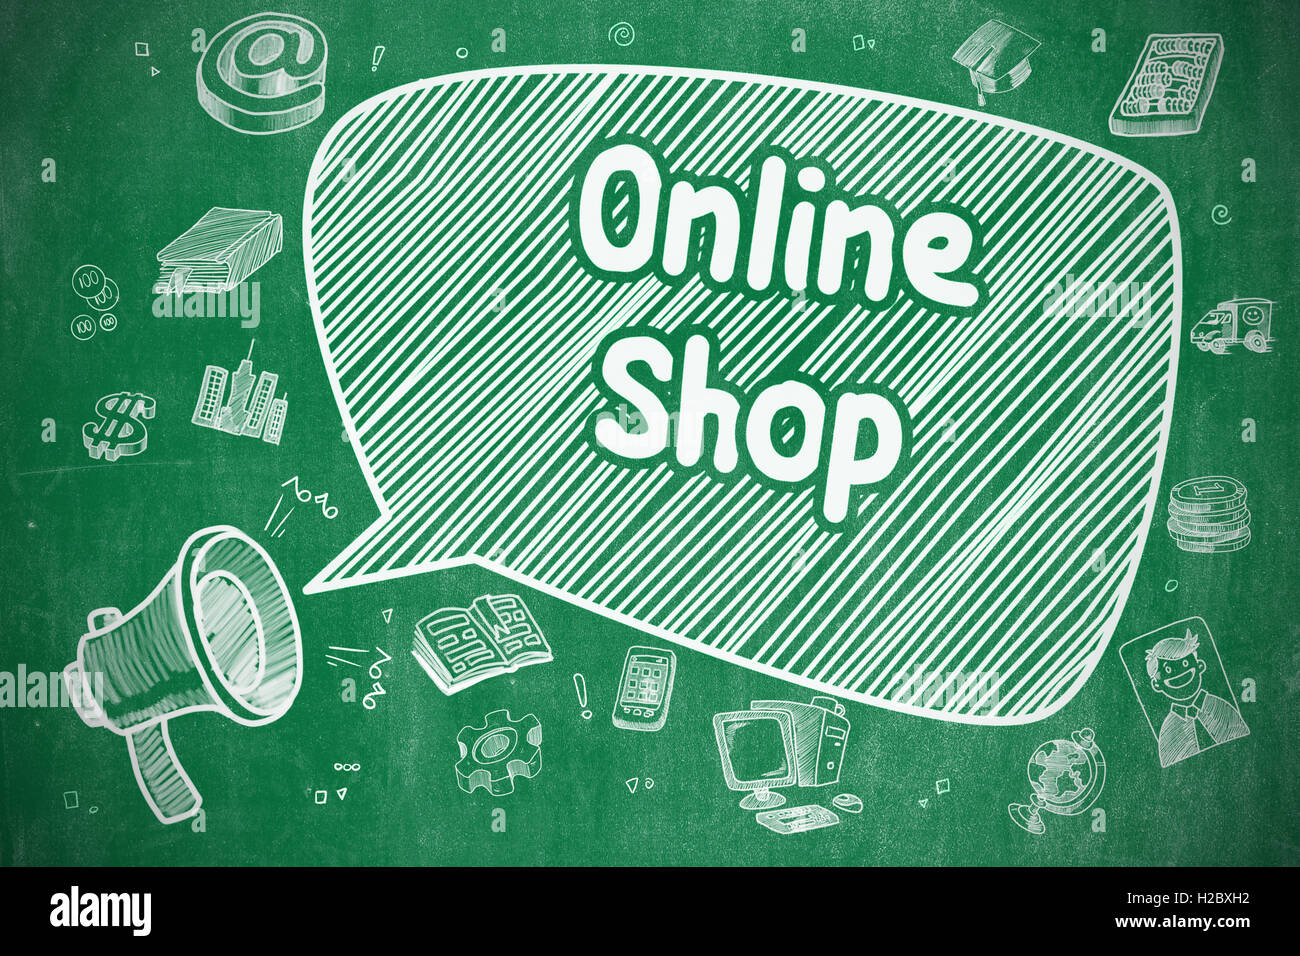 Online-Shop - Doodle Illustration an grüne Tafel. Stockfoto